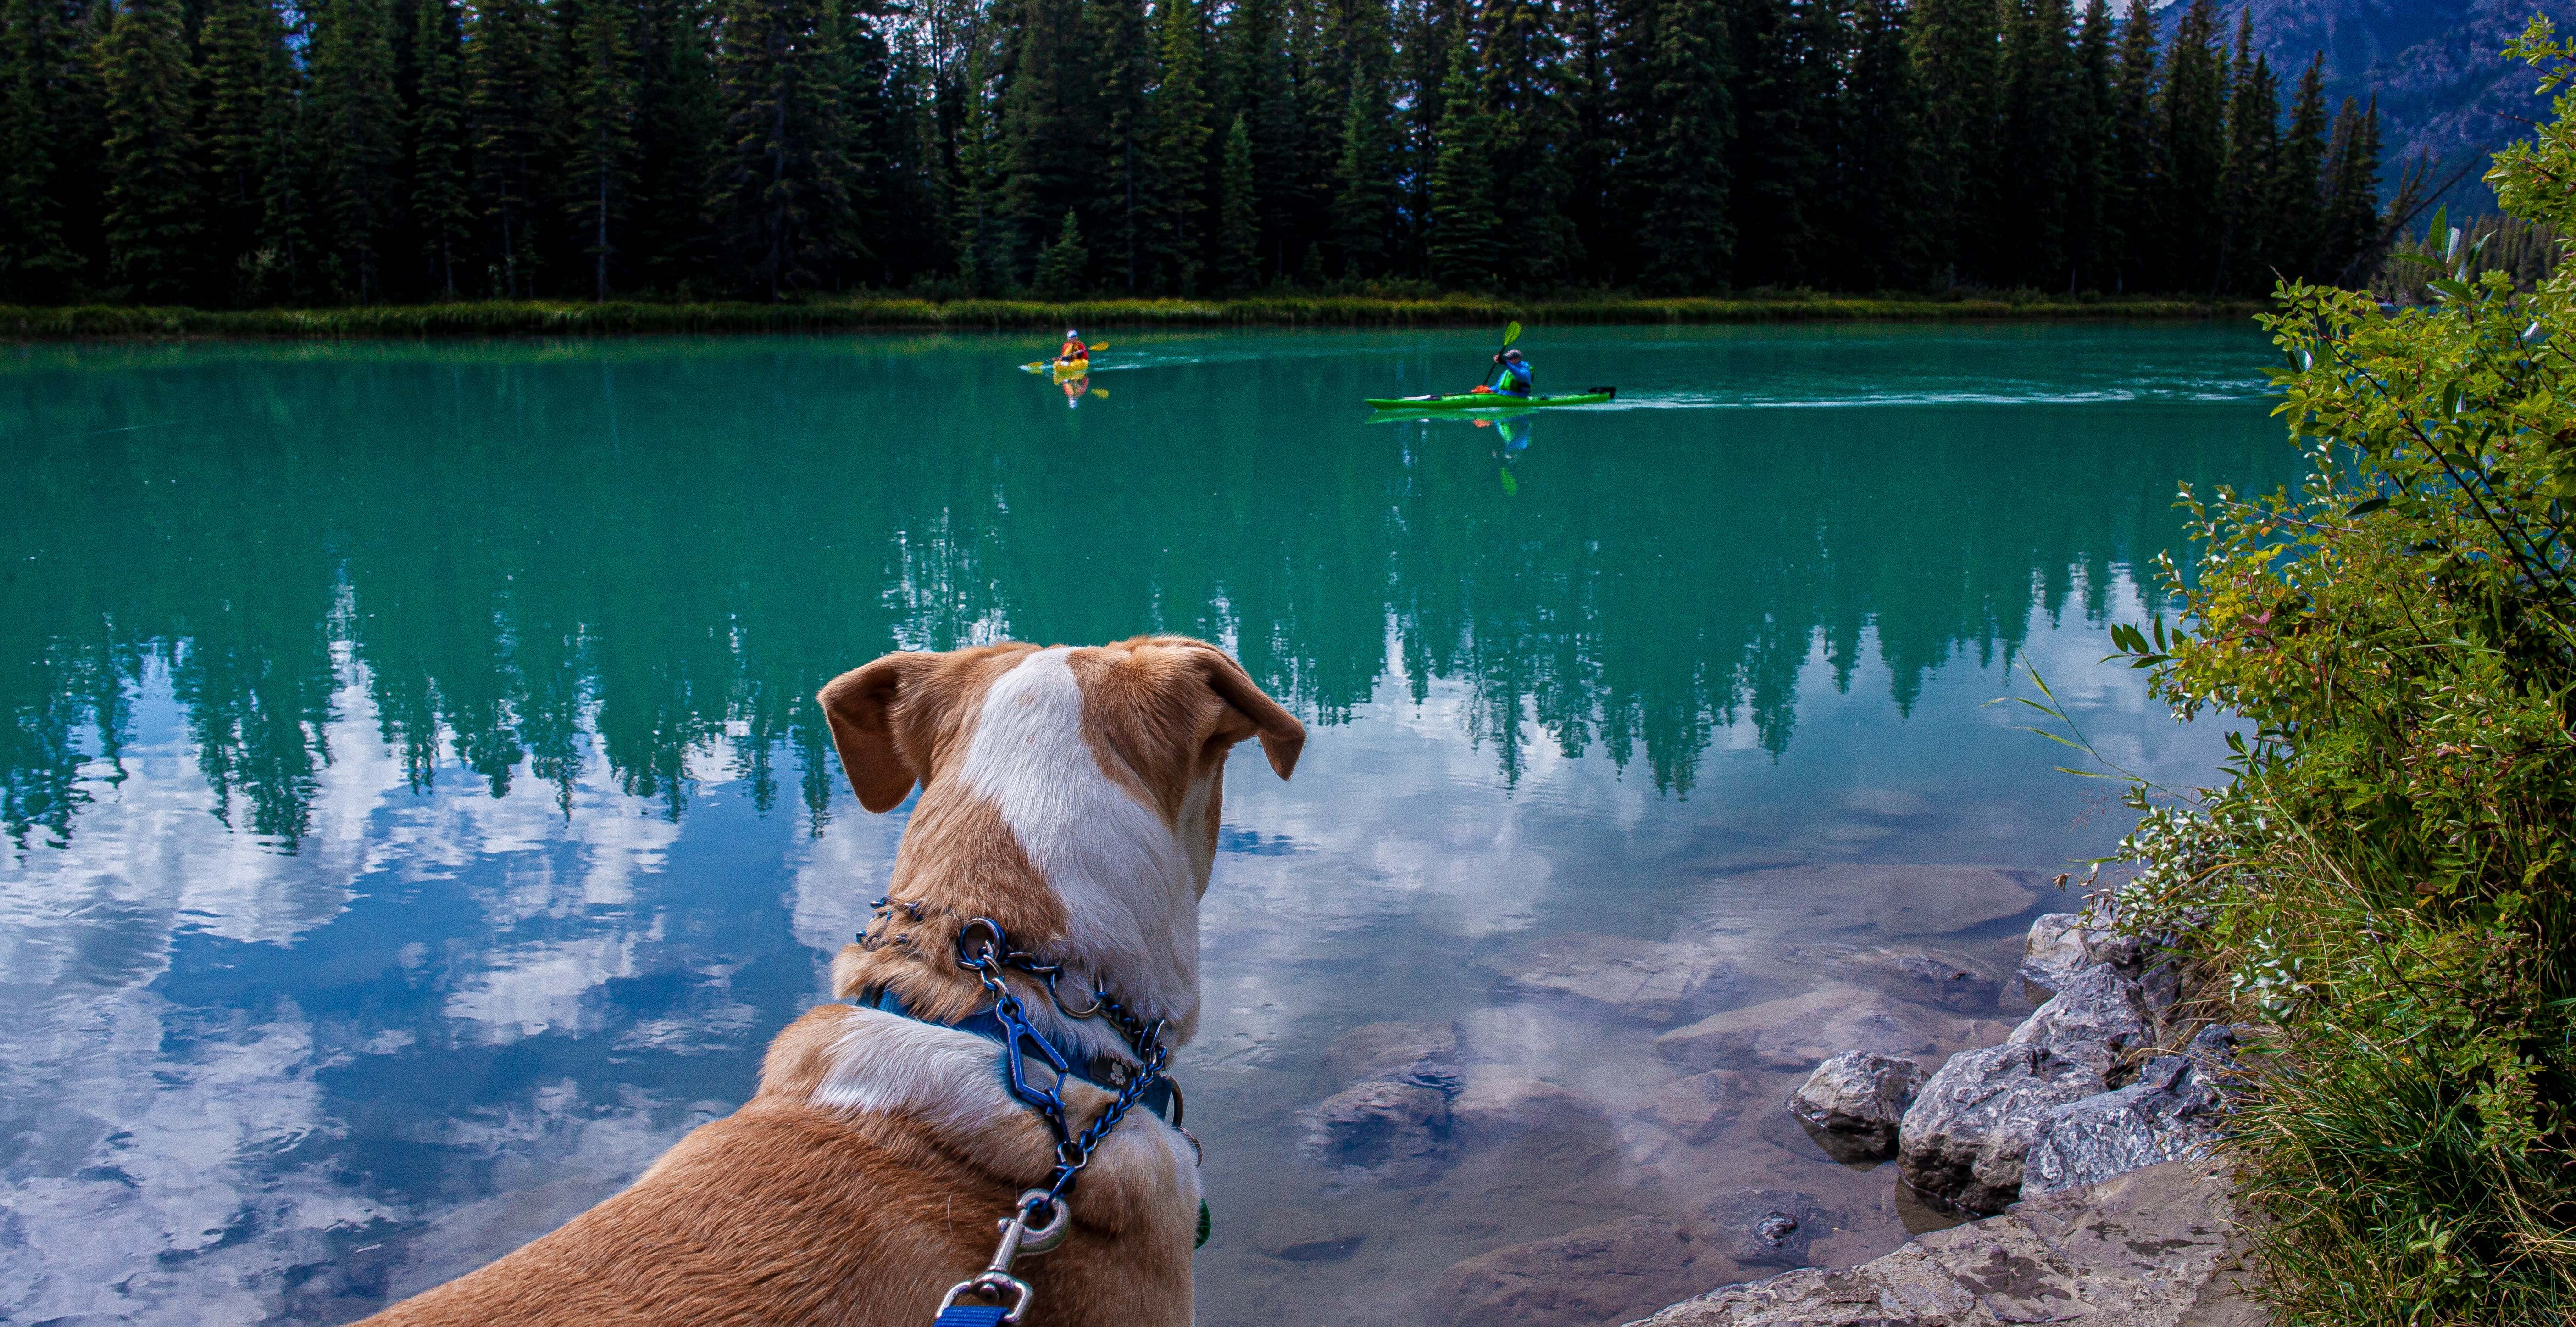 Dog watching kayakers in beautiful Banff, Alberta lake.